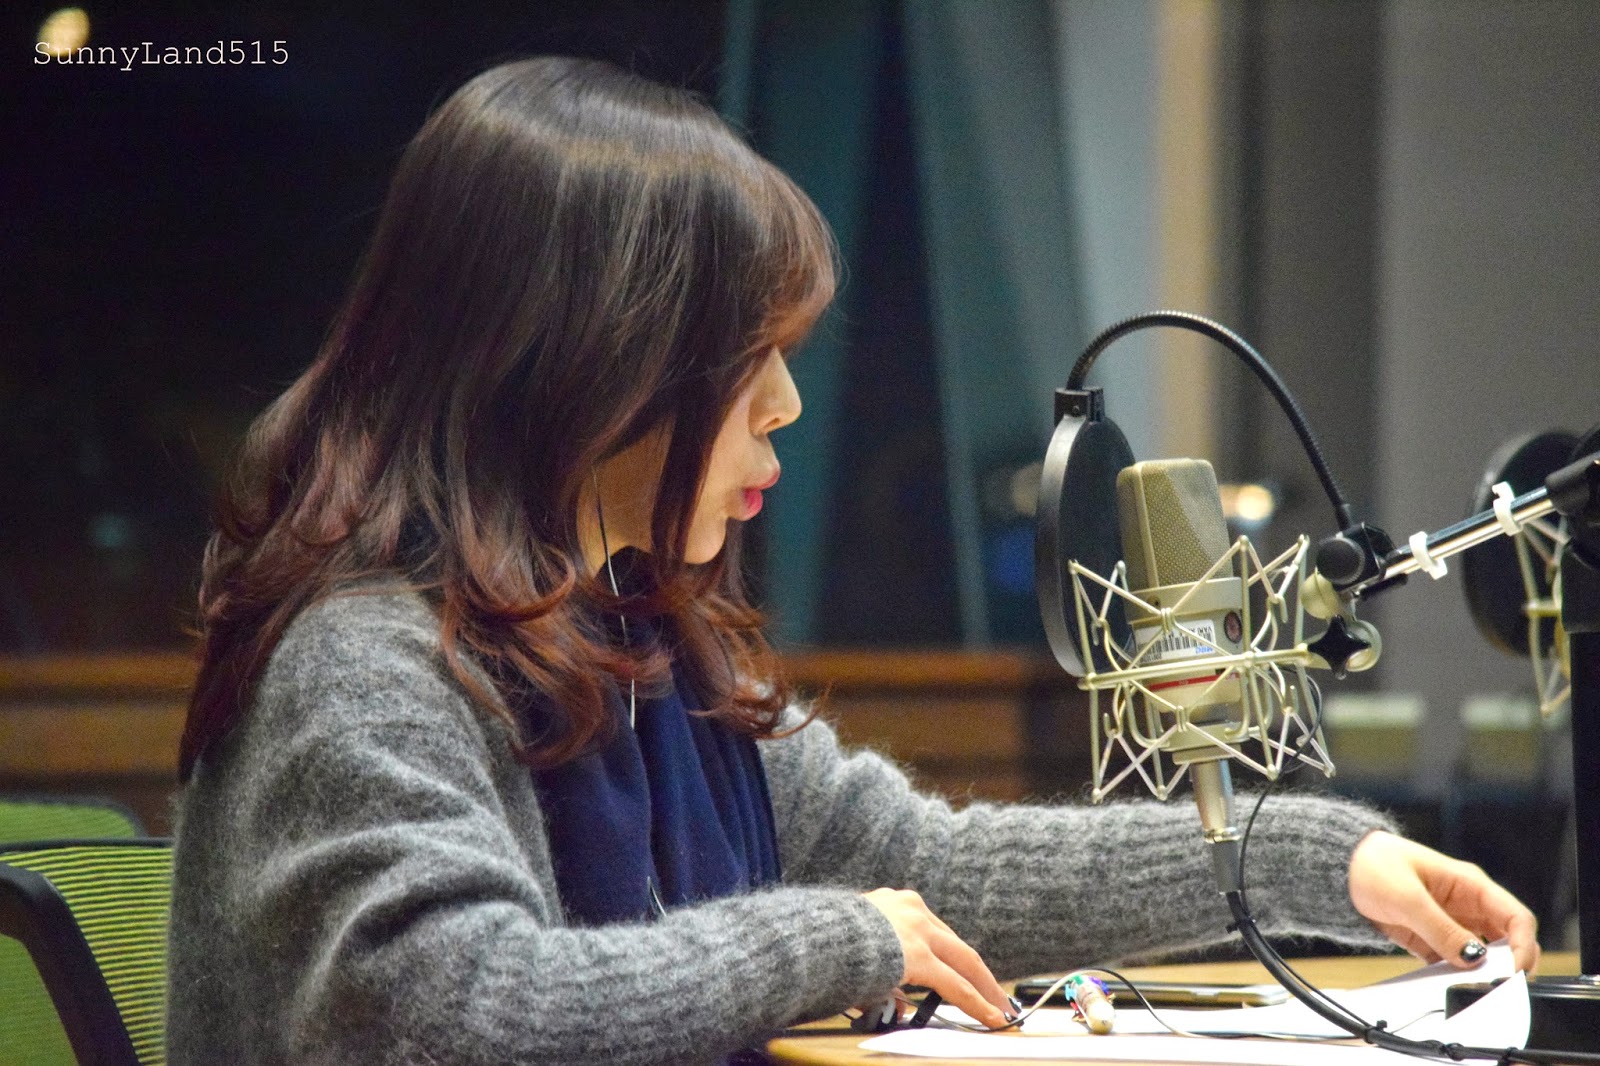 [OTHER][06-02-2015]Hình ảnh mới nhất từ DJ Sunny tại Radio MBC FM4U - "FM Date" - Page 10 DSC_0101_Fotor